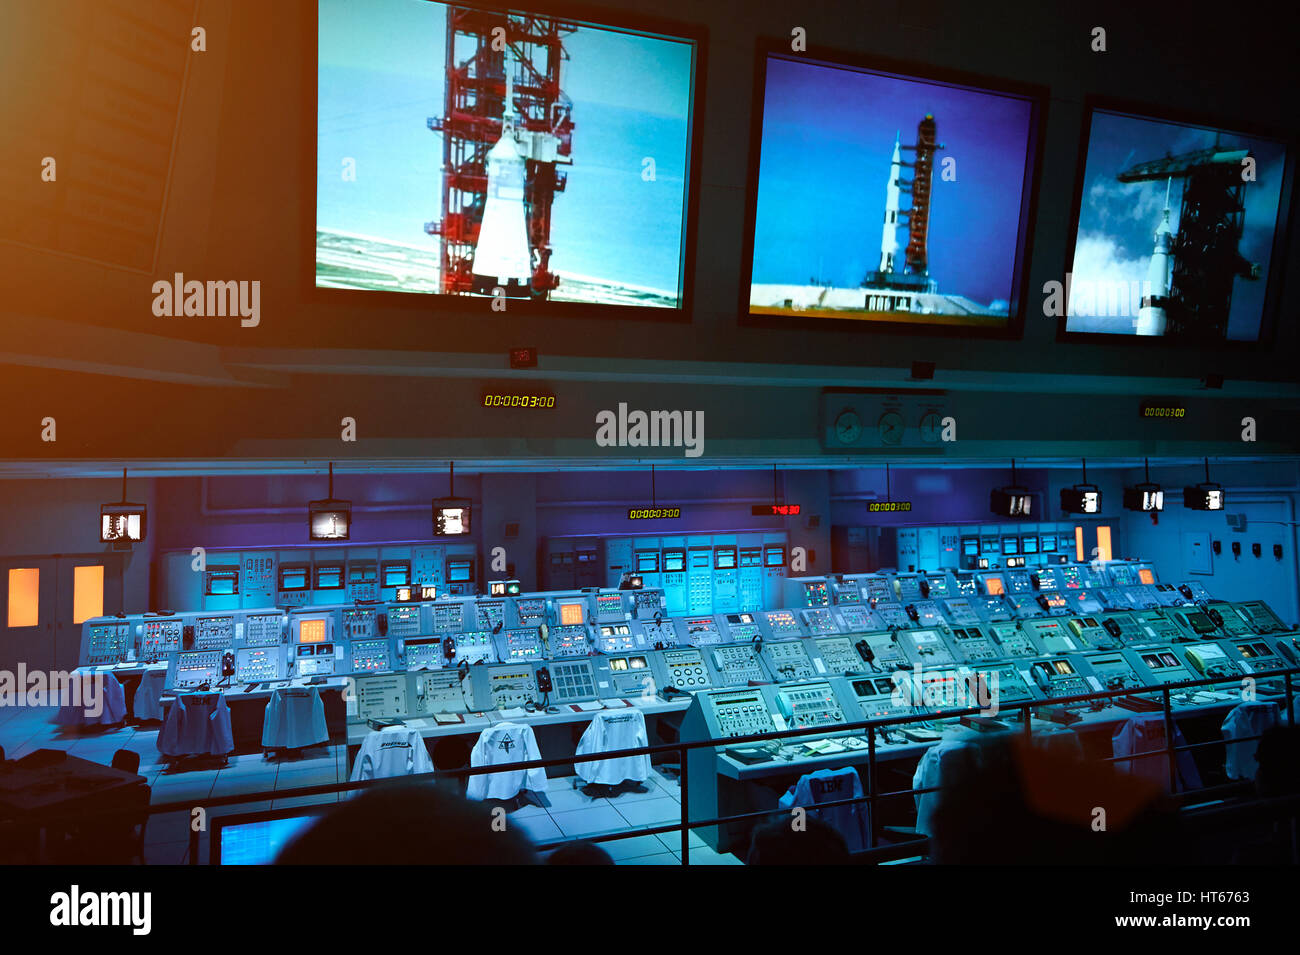 Orlando, USA - 2. August 2012: Systemsteuerung System für Mondmission im Nasa-Museum. Leere Panel für Rocket Launch pad Stockfoto